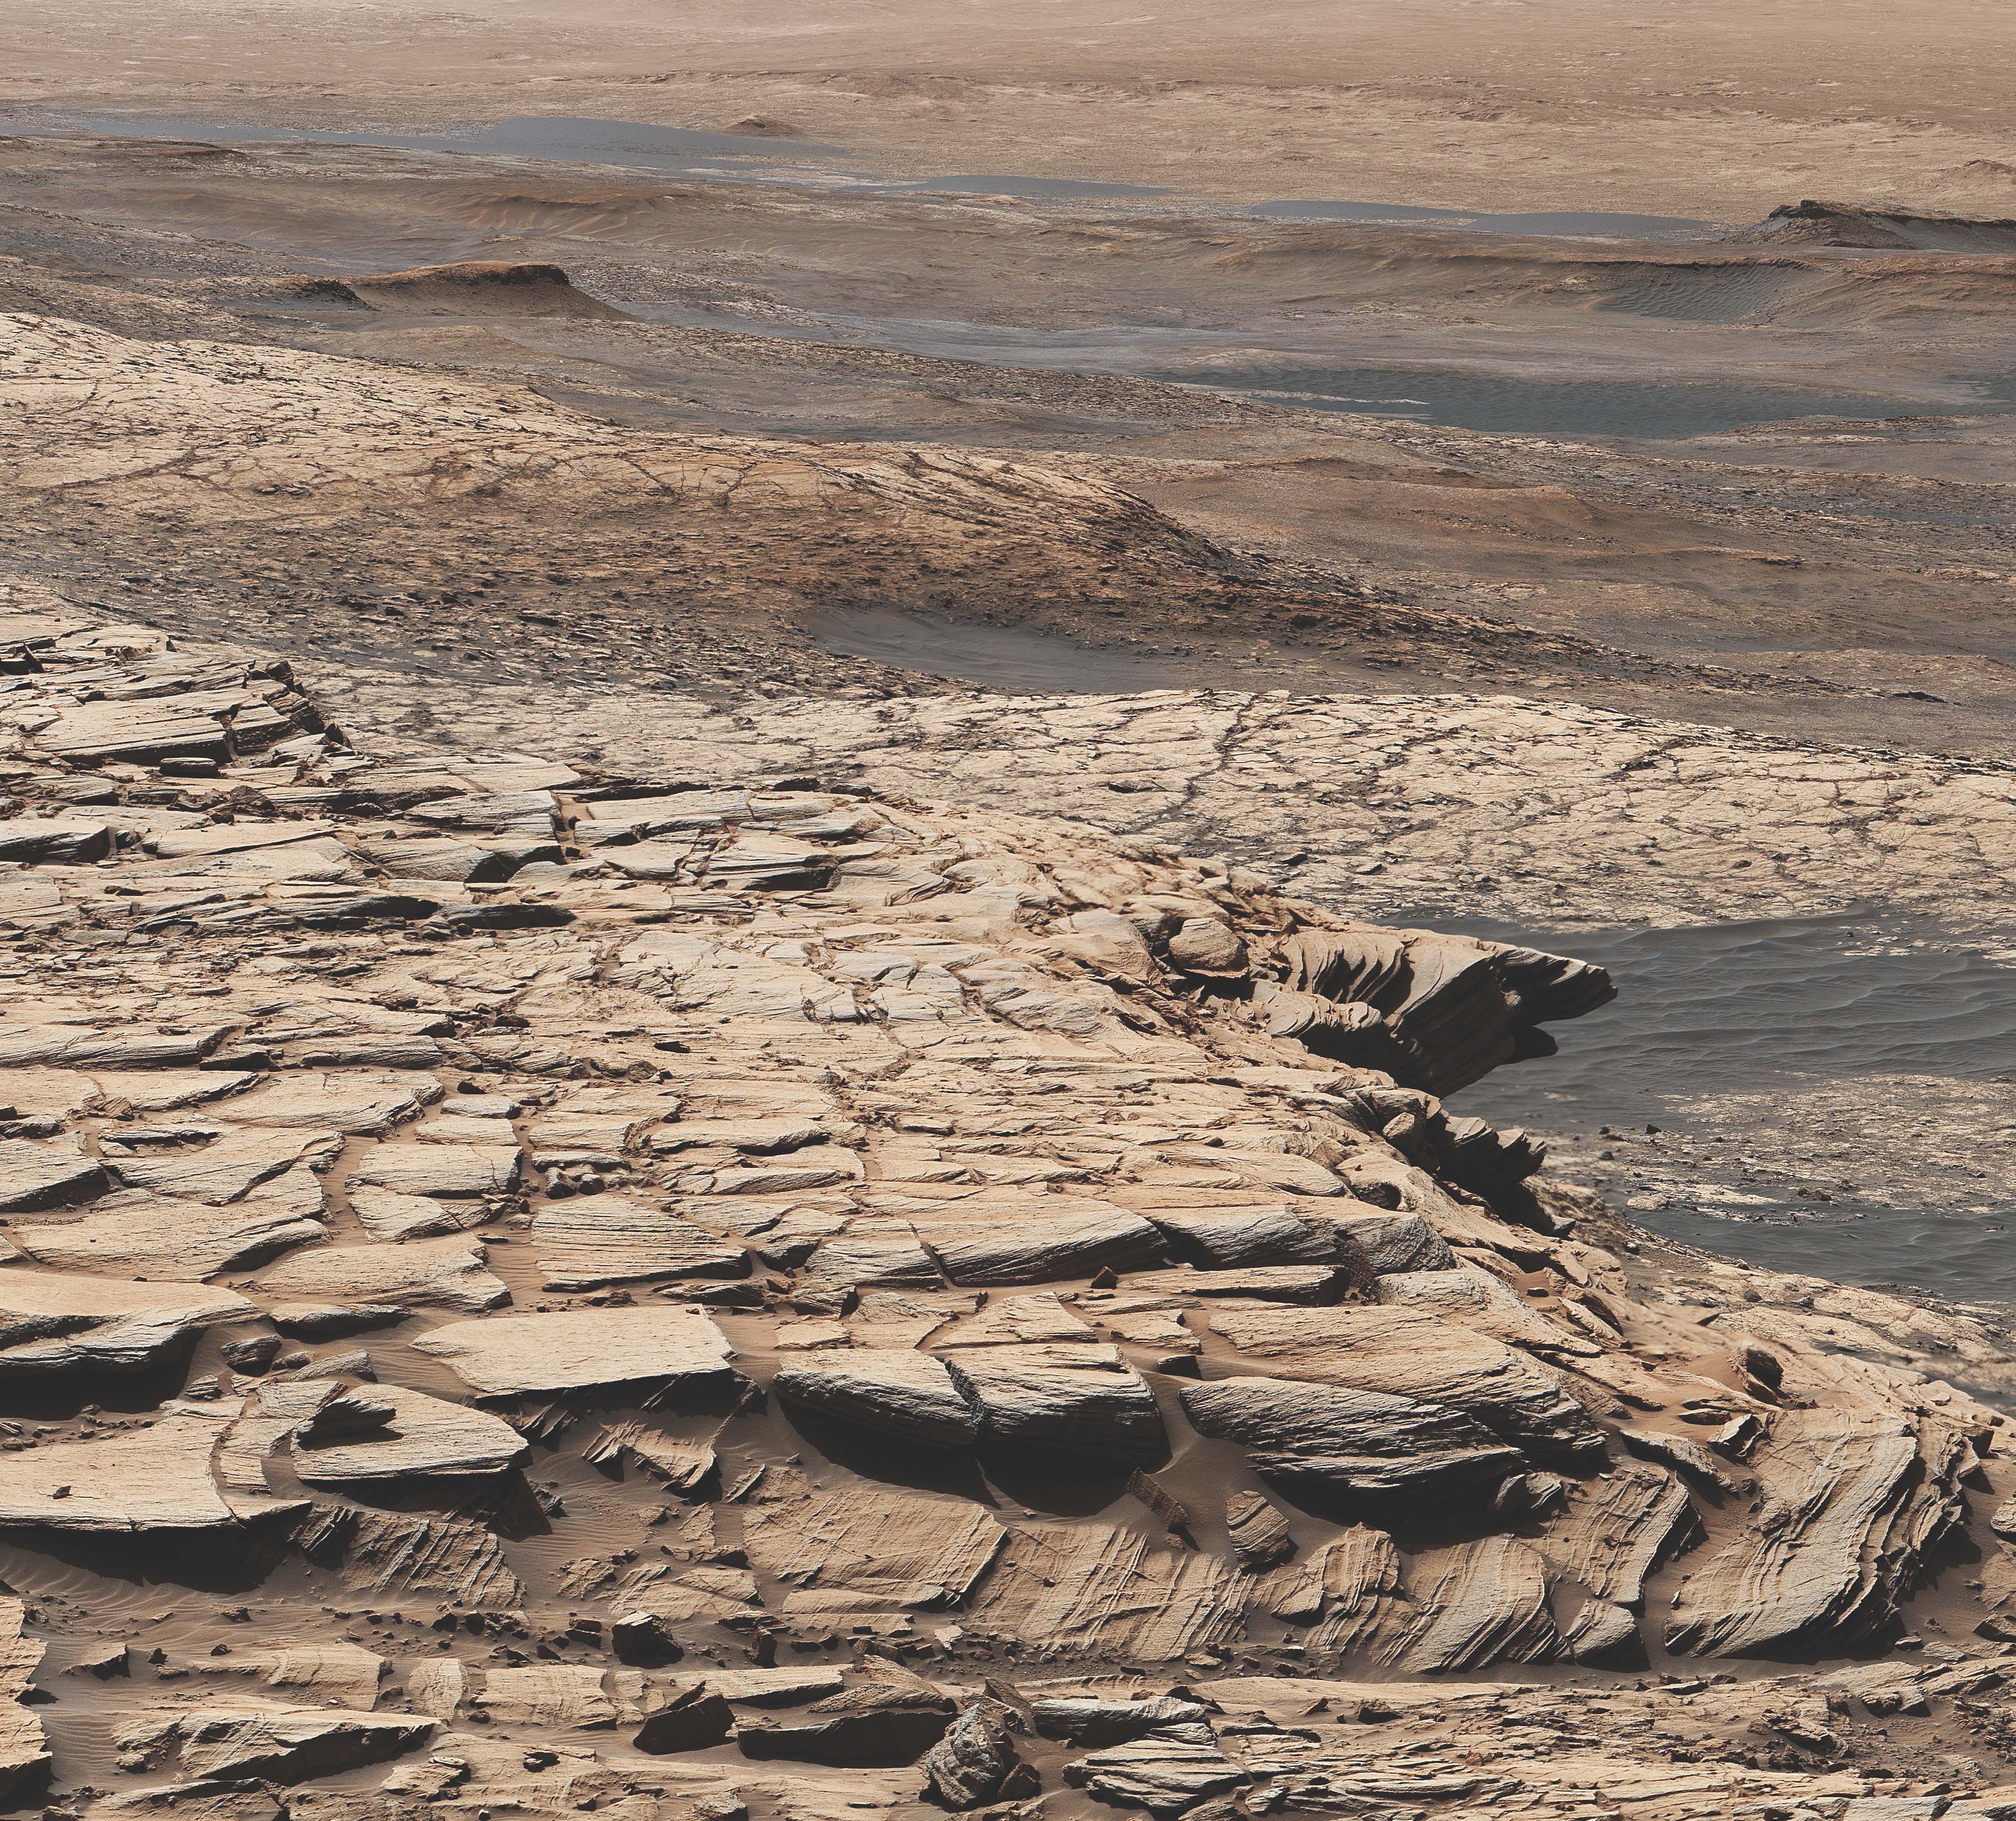 Ta mozaika została wykonana ze zdjęć wykonanych przez kamerę MAST na pokładzie statku kosmicznego NASA Curiosity w dniu Marsa 2729, czyli w dniu Sol w misji.  Pokazuje krajobraz formacji piaskowca Stimson w kraterze Gale.  W tym ogólnym miejscu Curiosity wywiercił otwór w Edynburgu, którego próbkę wzbogacono węglem 12.